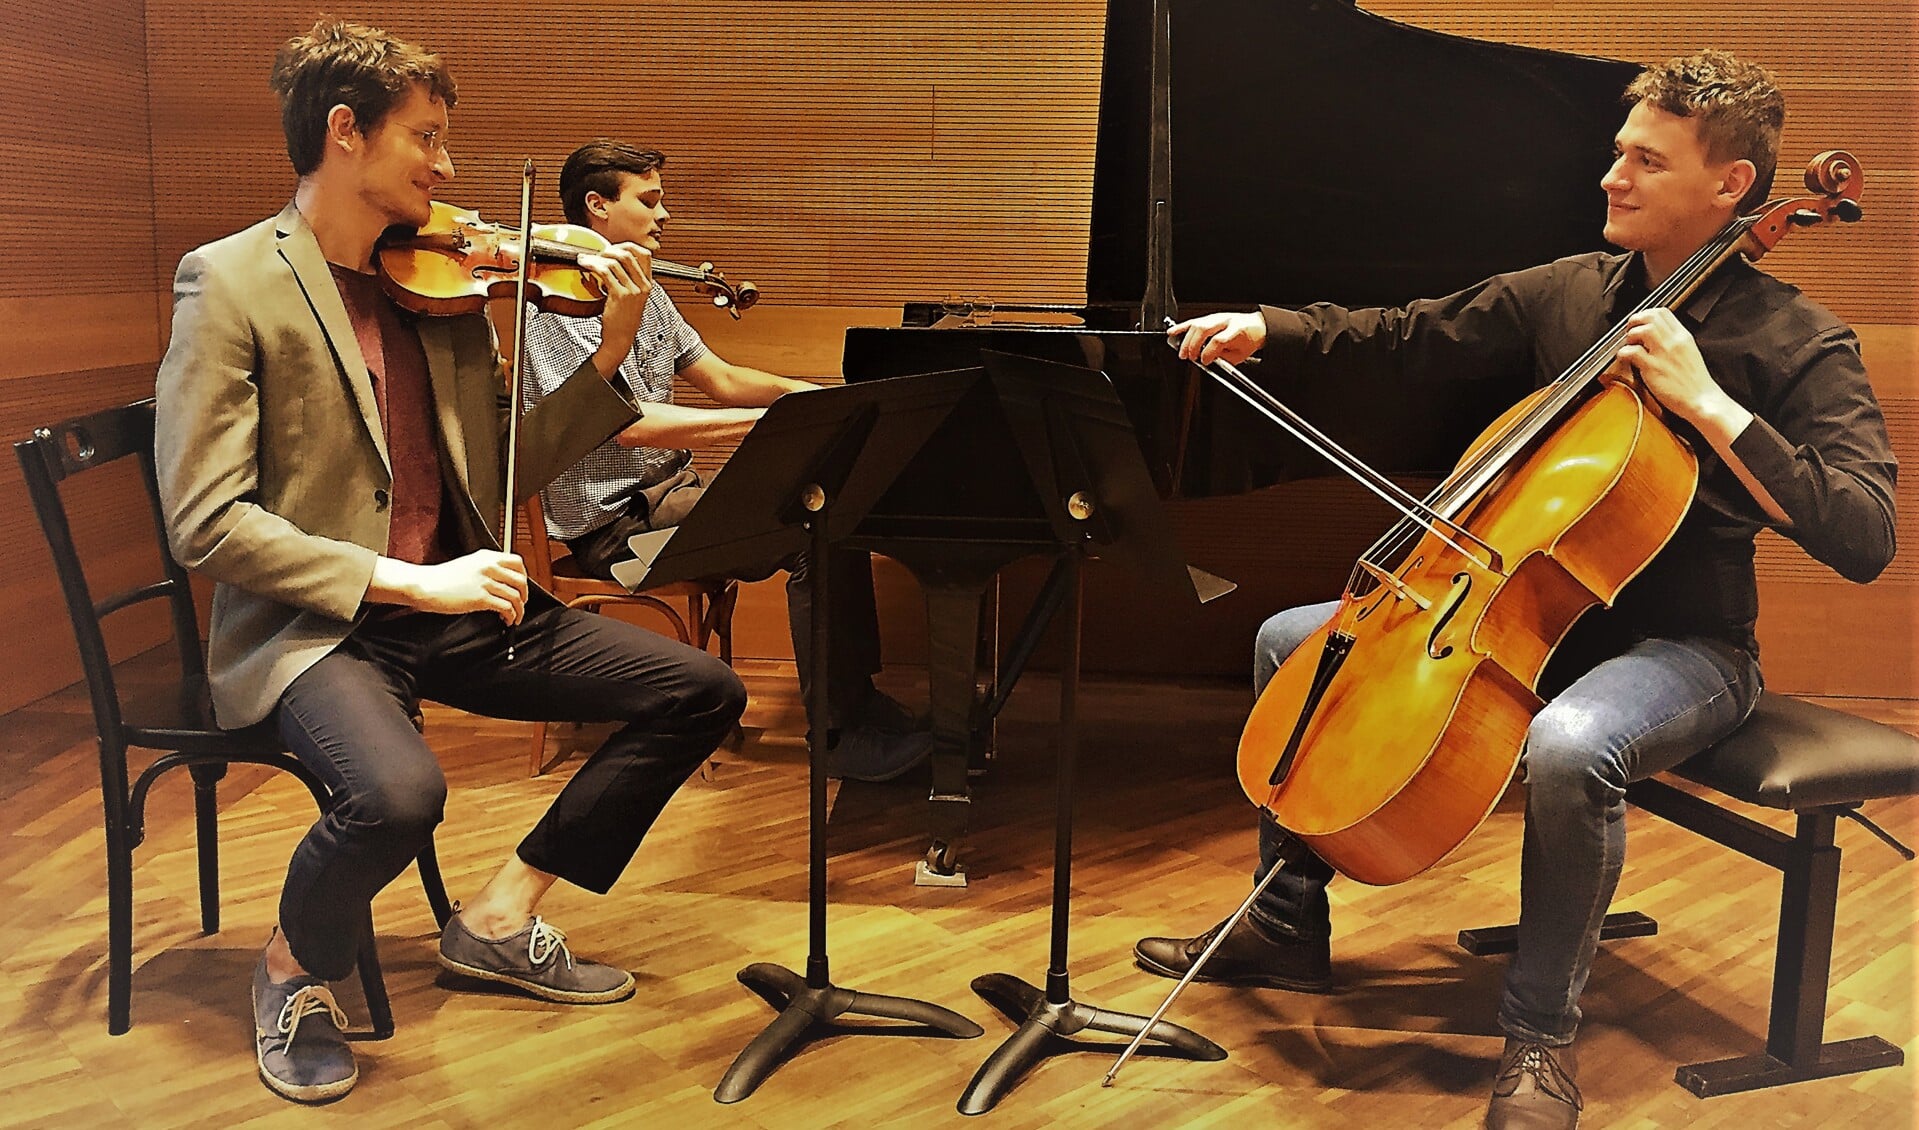 Het Pál Hermann Ensemble uit Hongarije betovert het publiek met onder meer een klassiek muziekstuk van Mozart. (aangeleverde foto)